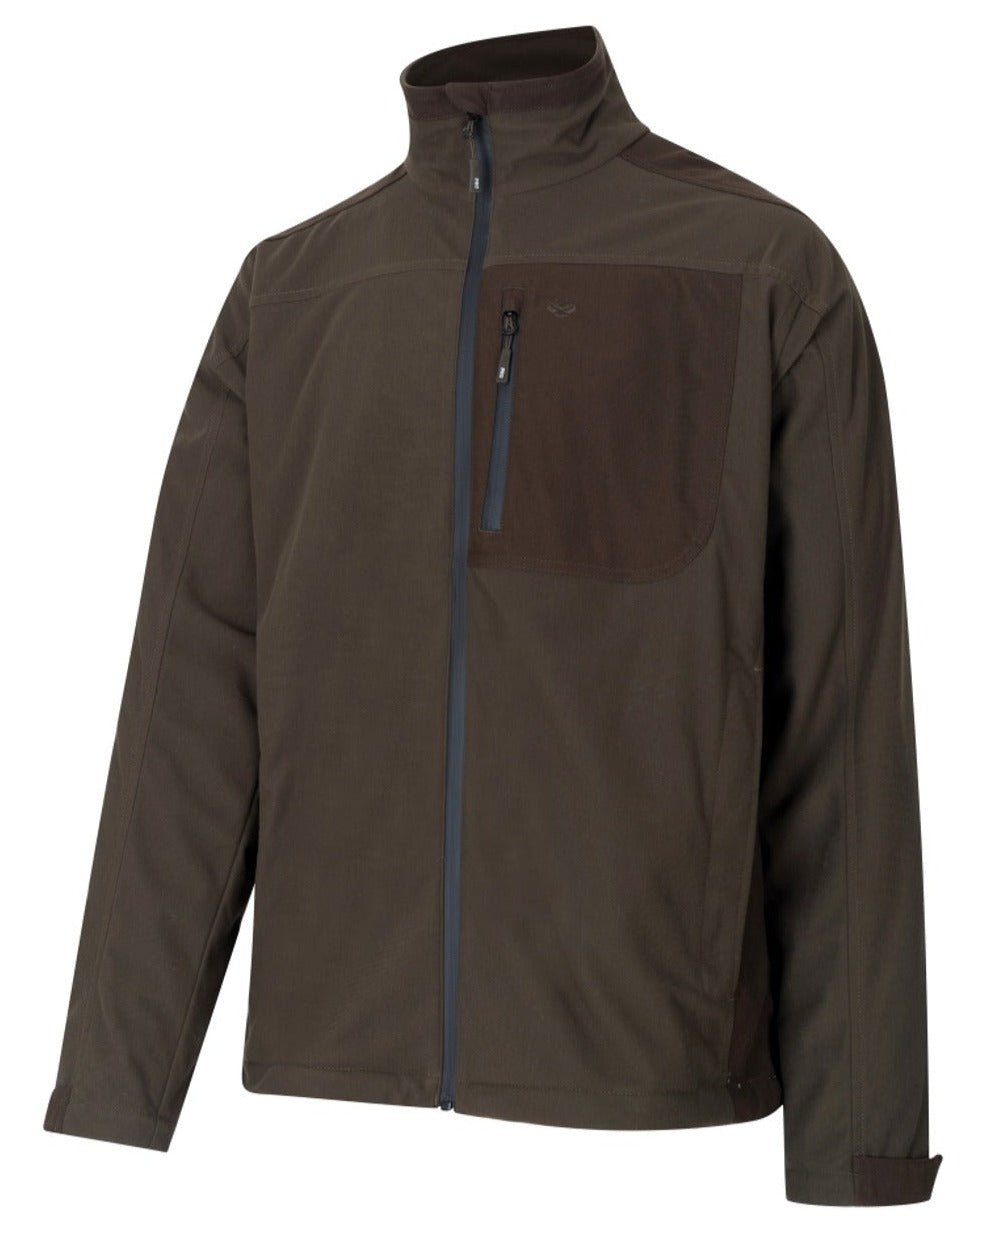 Kinross II Waterproof Field Jacket In Green/Brown